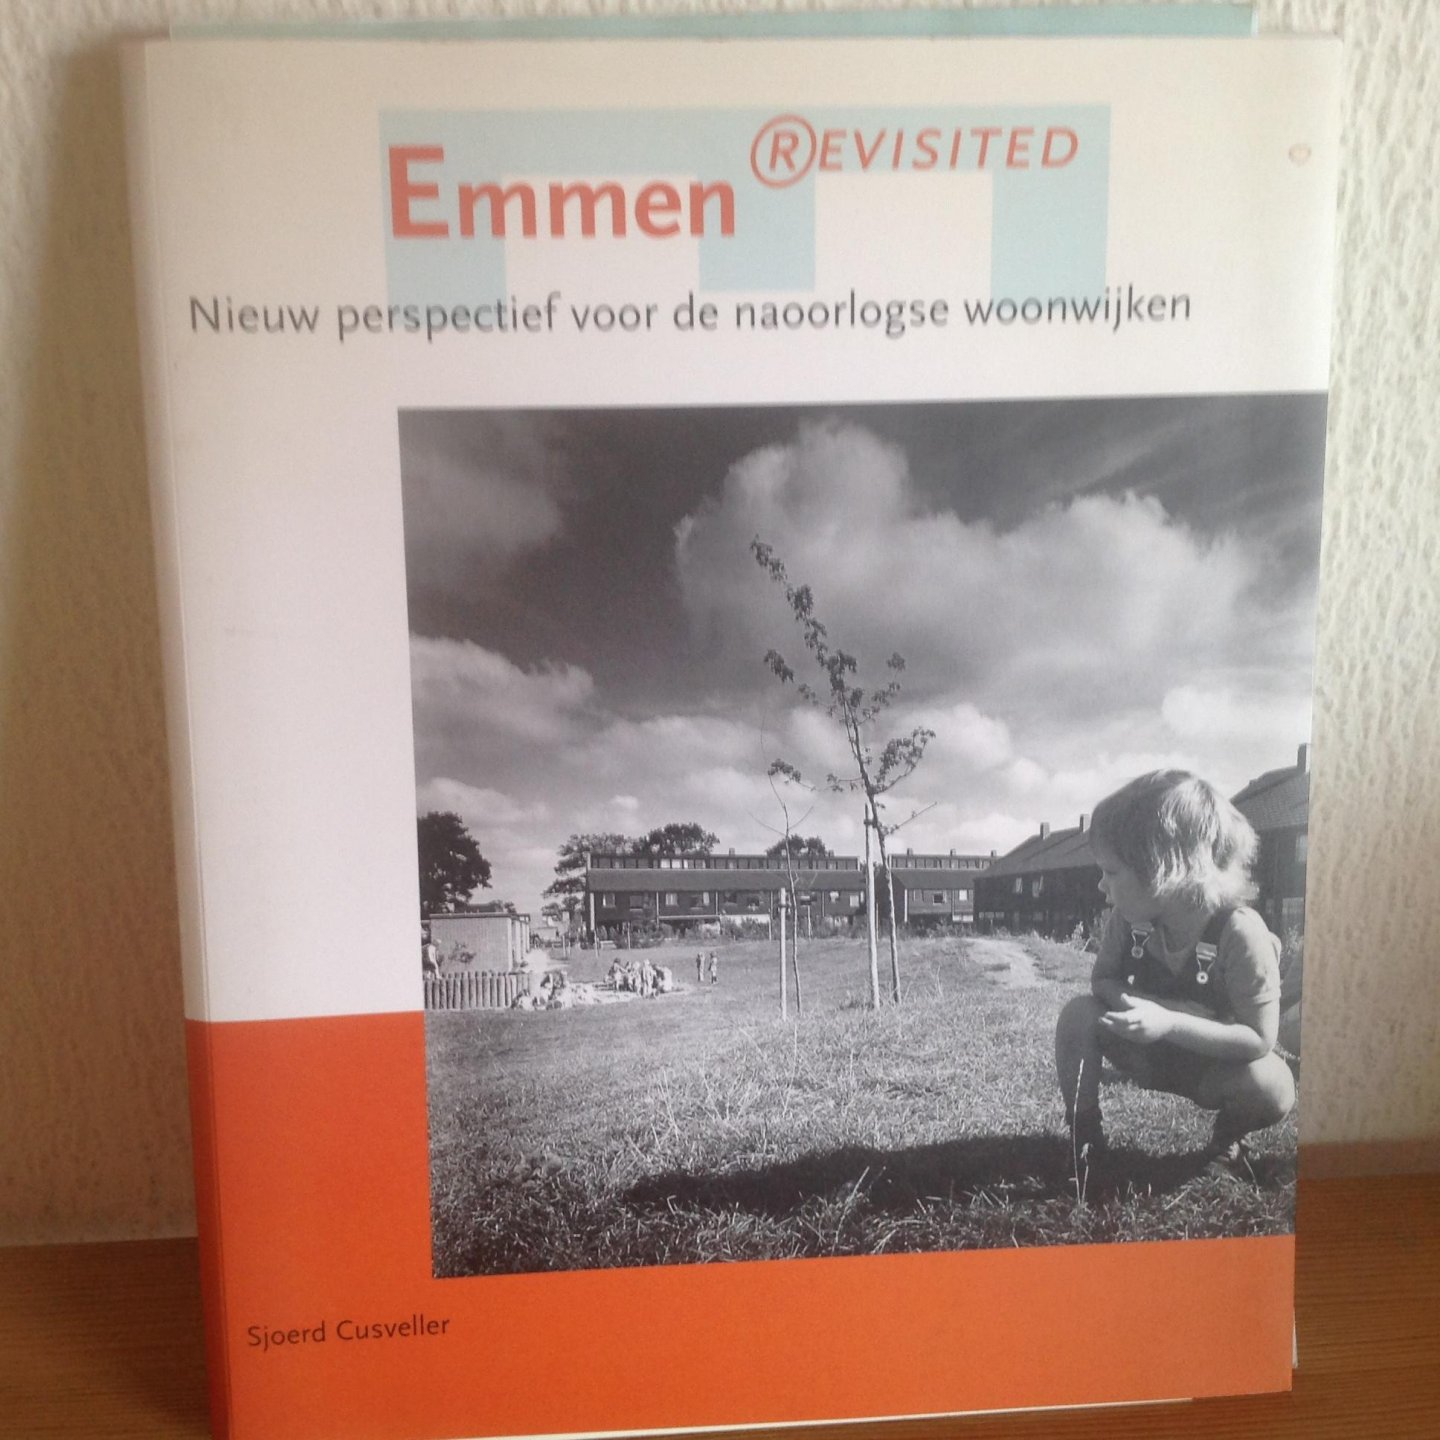 Sjoerd Cusveller - Emmen revisited / nieuw perspectief voor de naoorlogse woonwijken